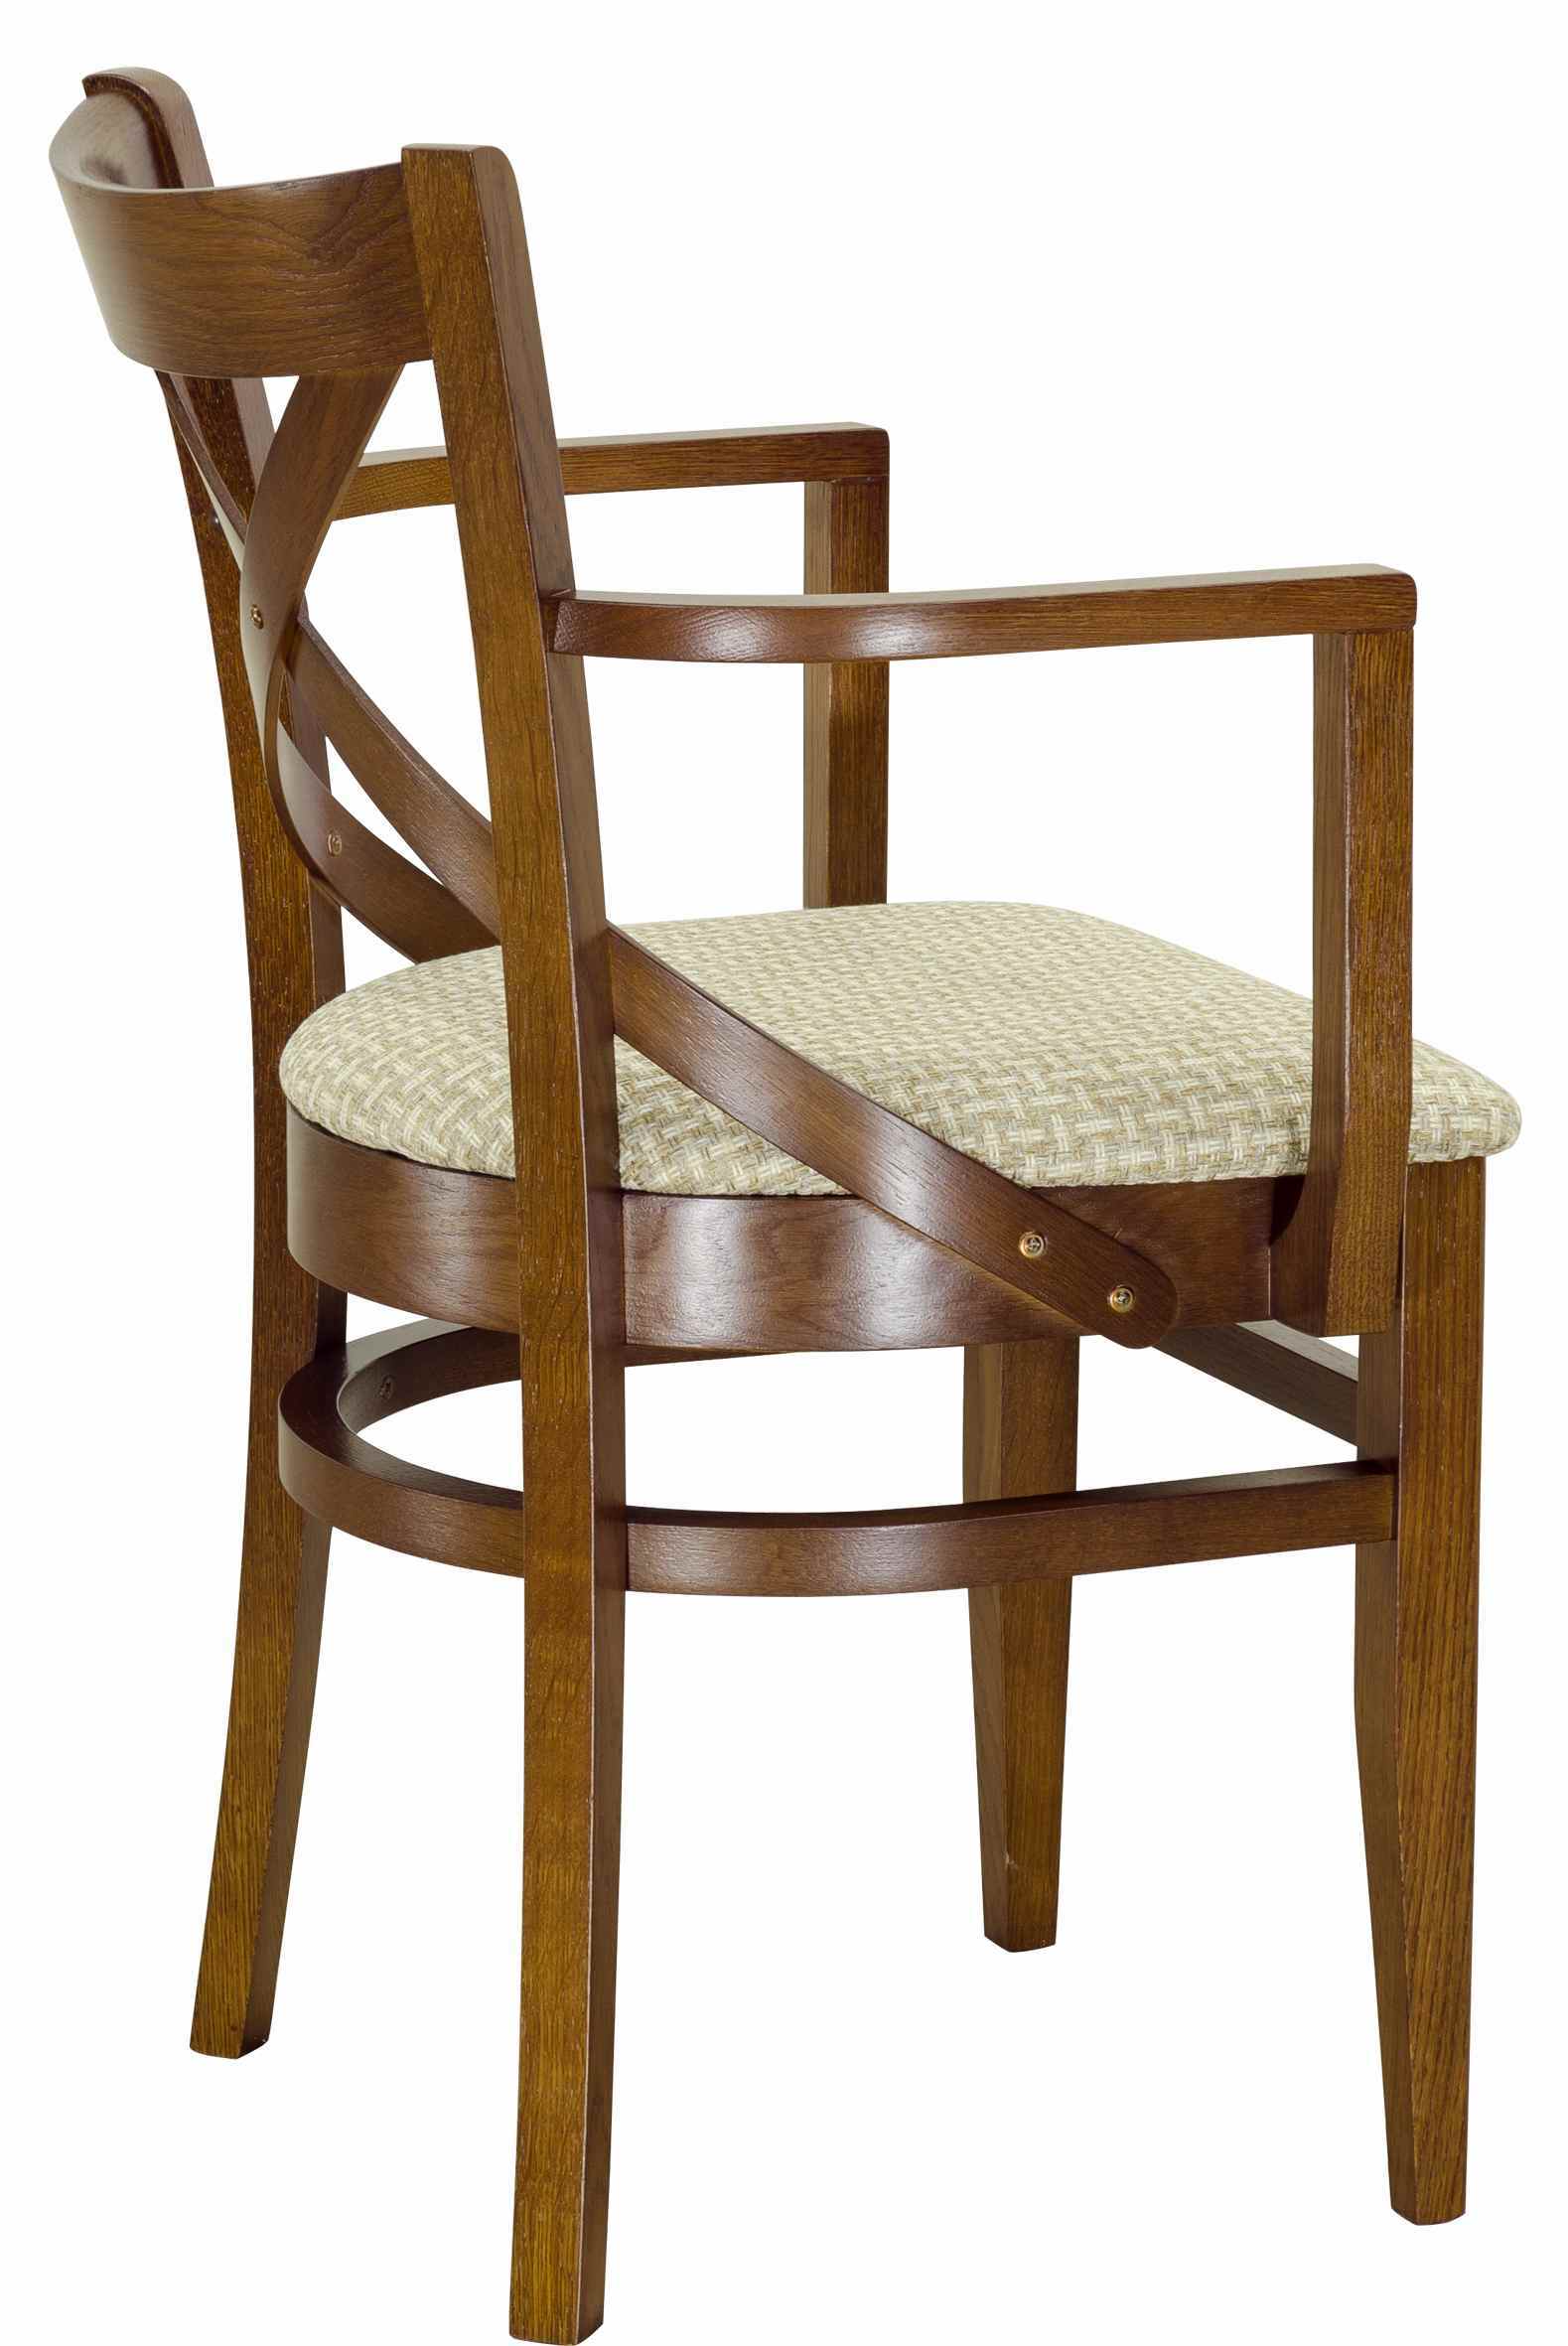 стул обеденный деревянный с подлокотниками